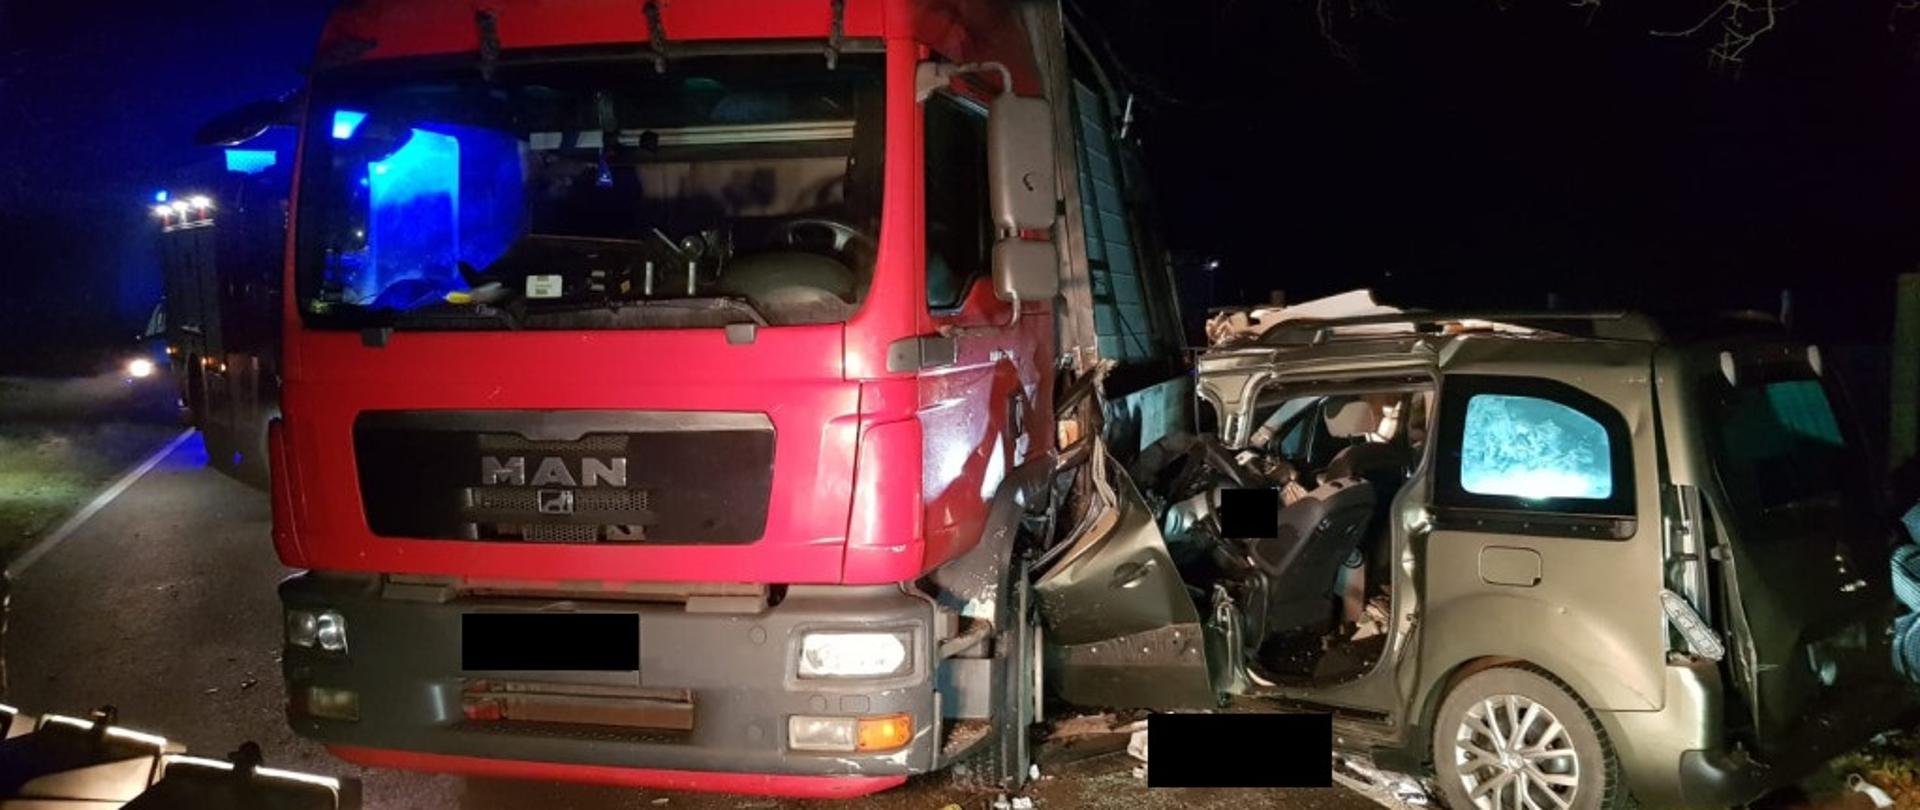 Widać czerwony samochód ciężarowy, w lewy bok uderzył pojazd osobowy, który jest mocno uszkodzony